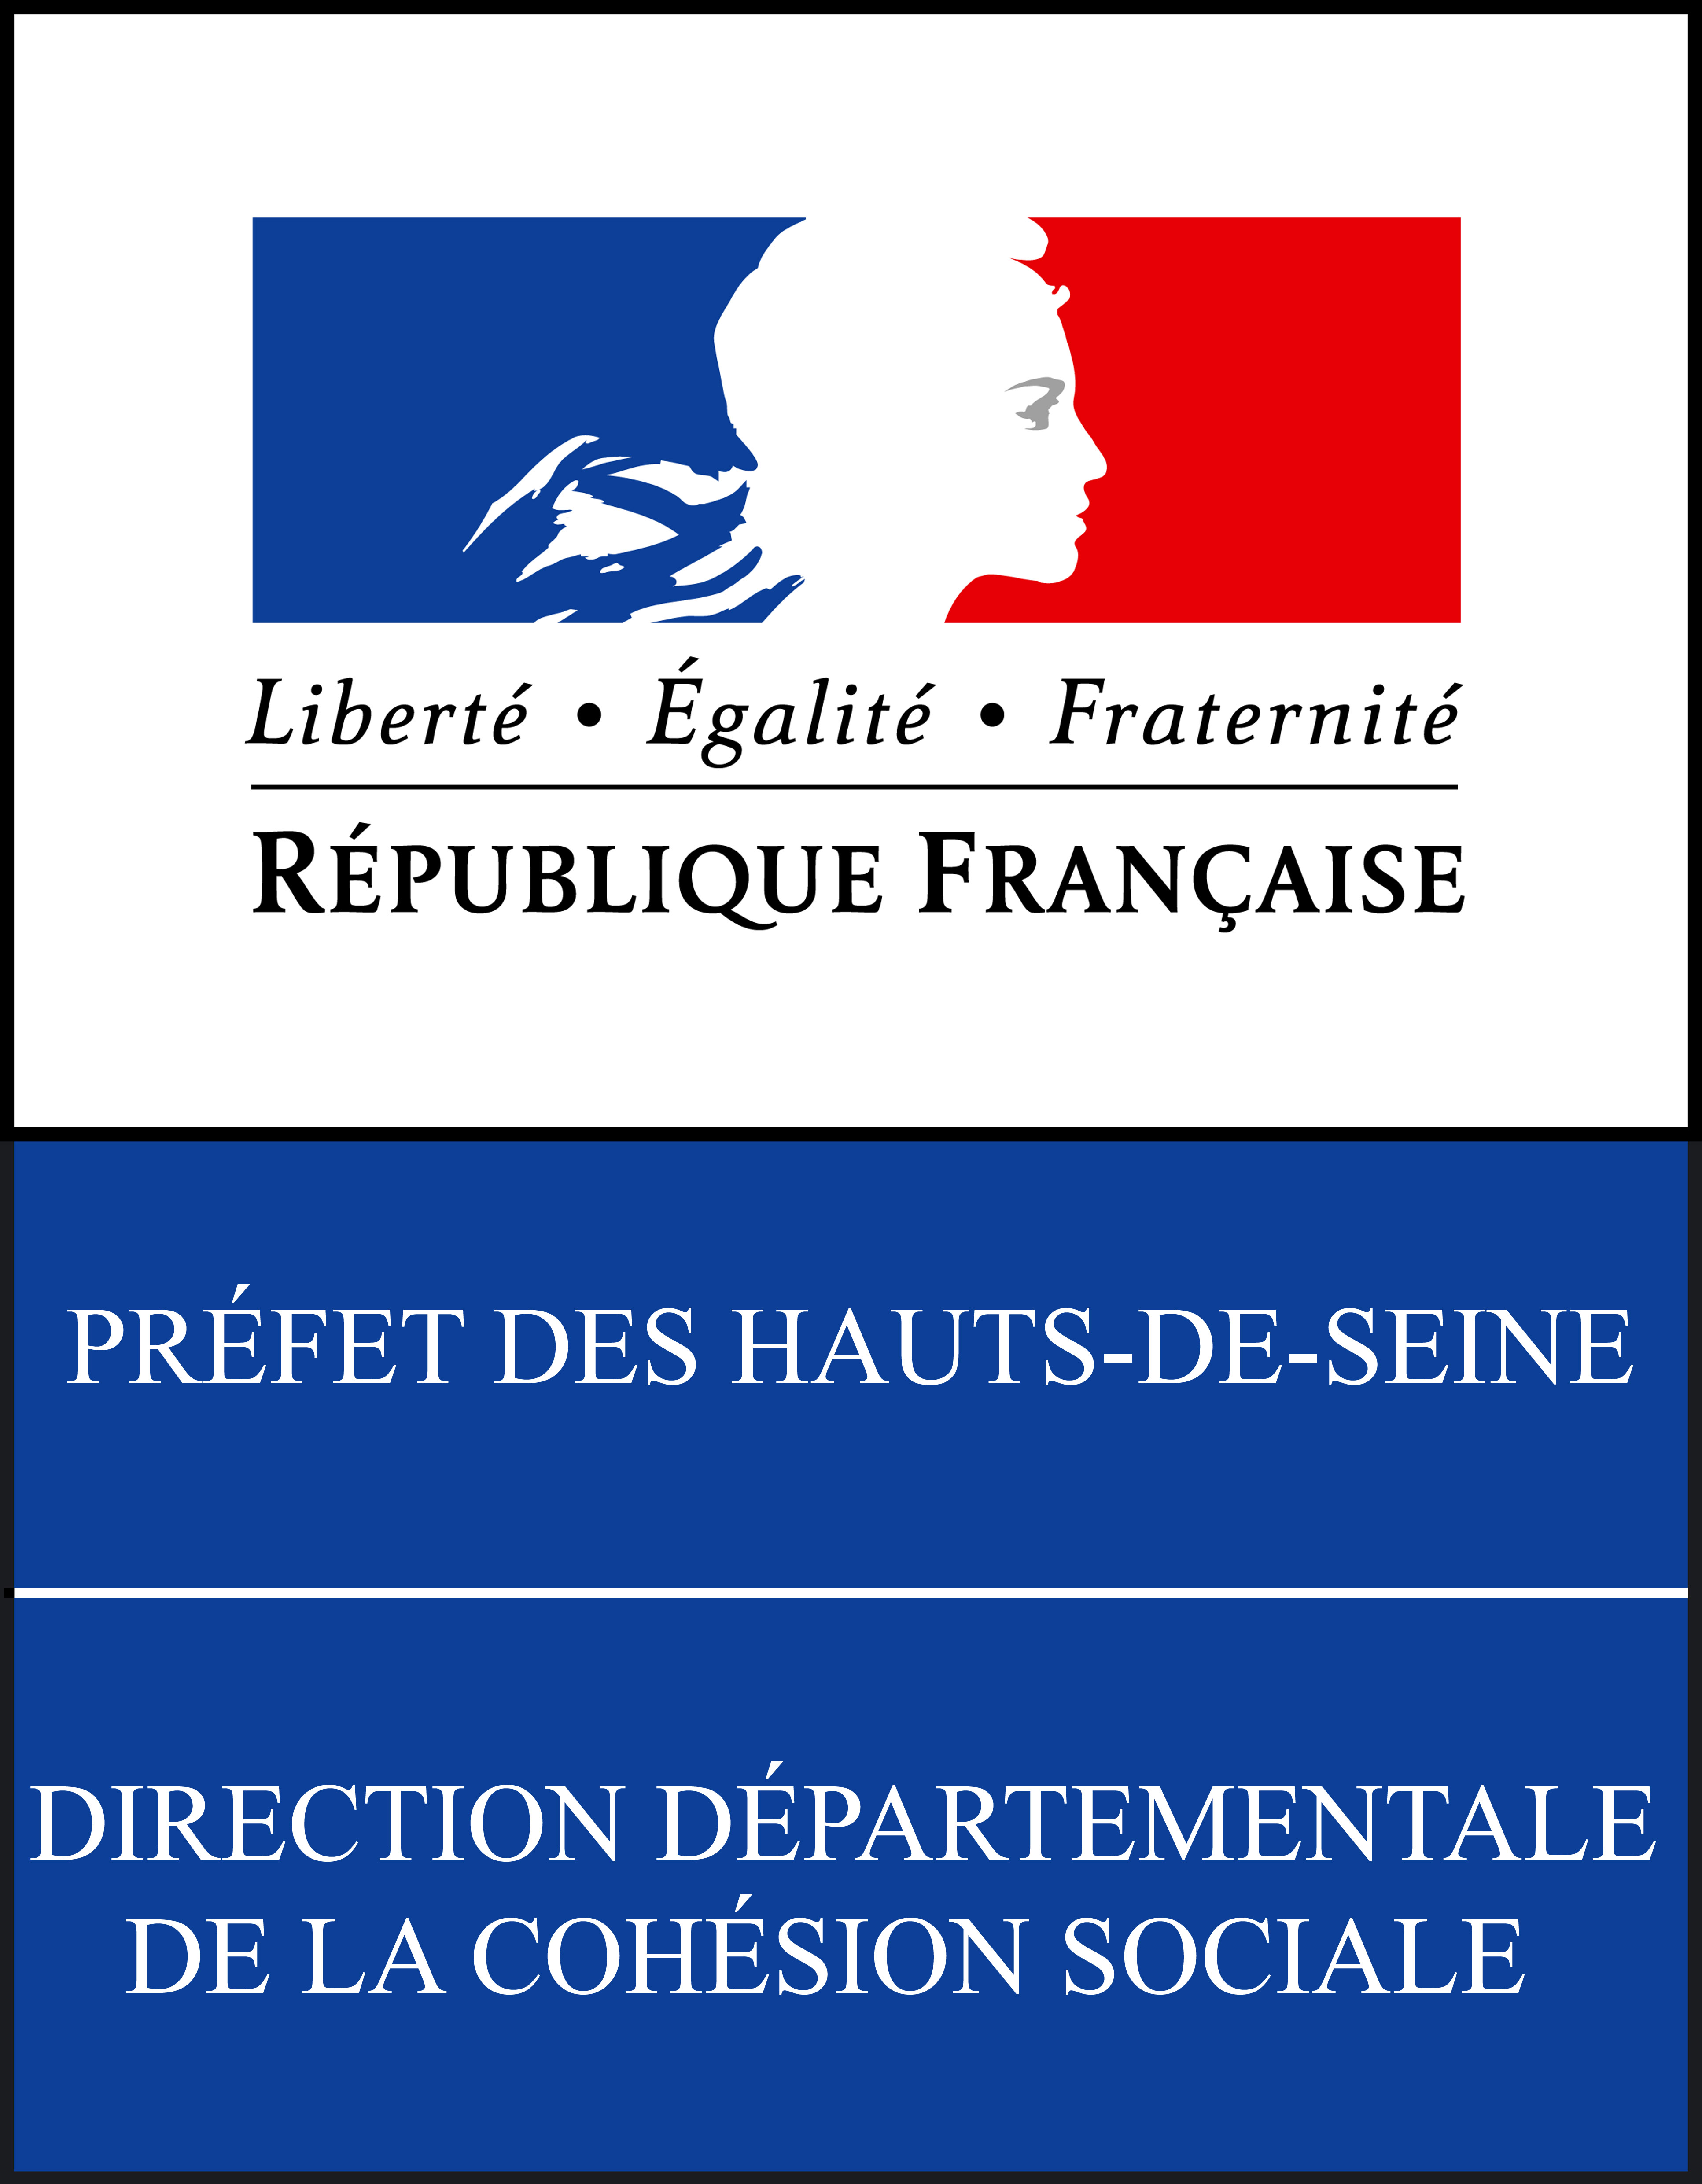 Direction Départementale de la Cohésion Sociale dees Hauts de Seine